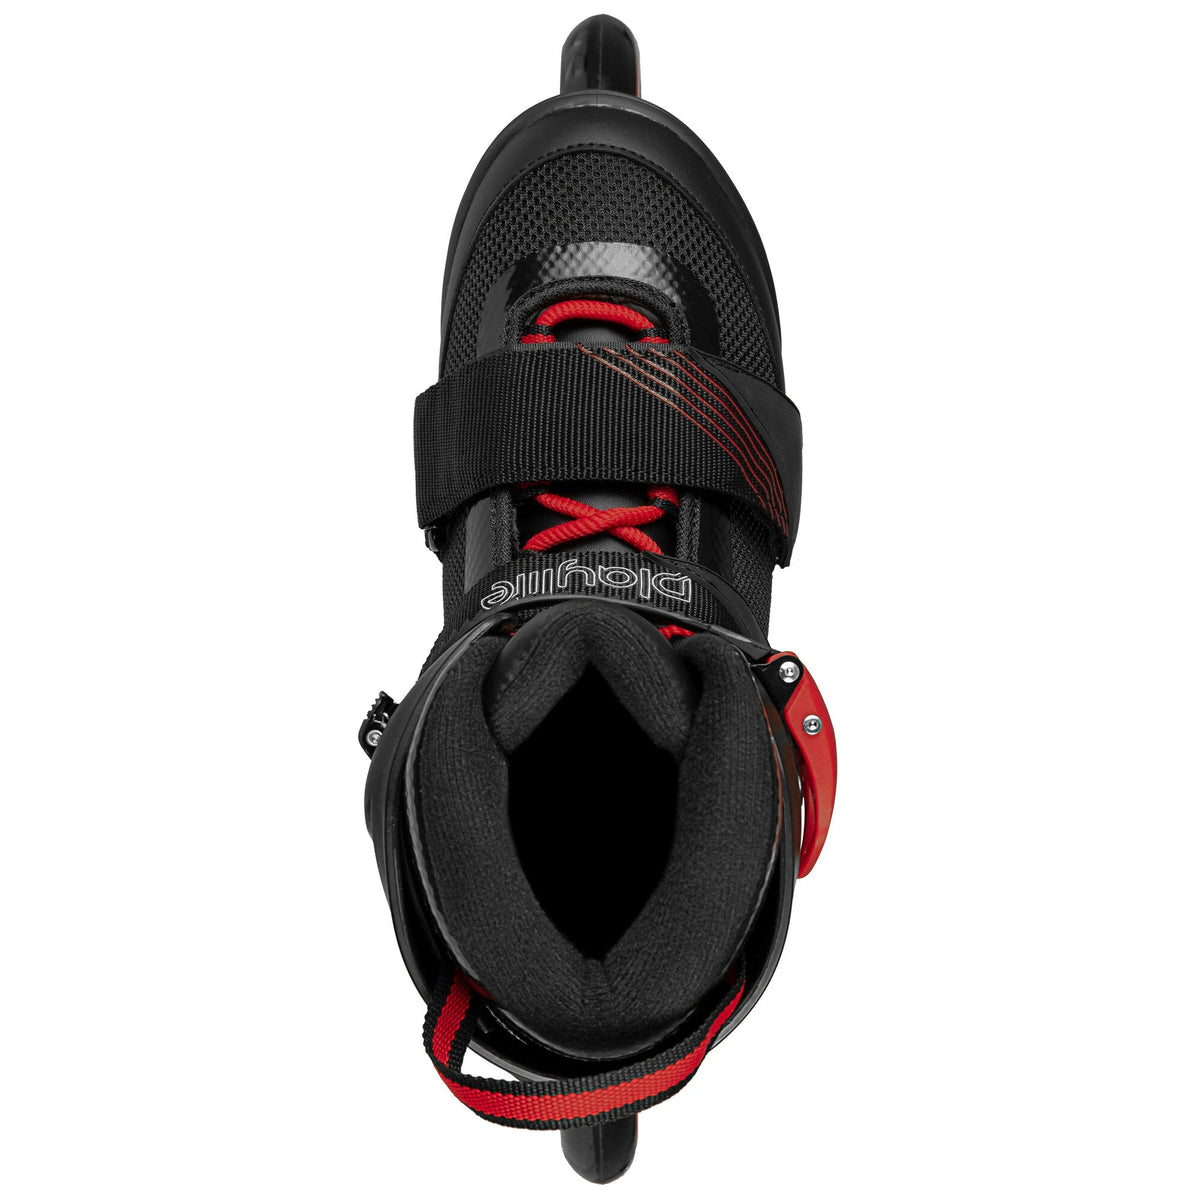 Playlife GT 110 Skate - Black/Red Inline Rec Skates